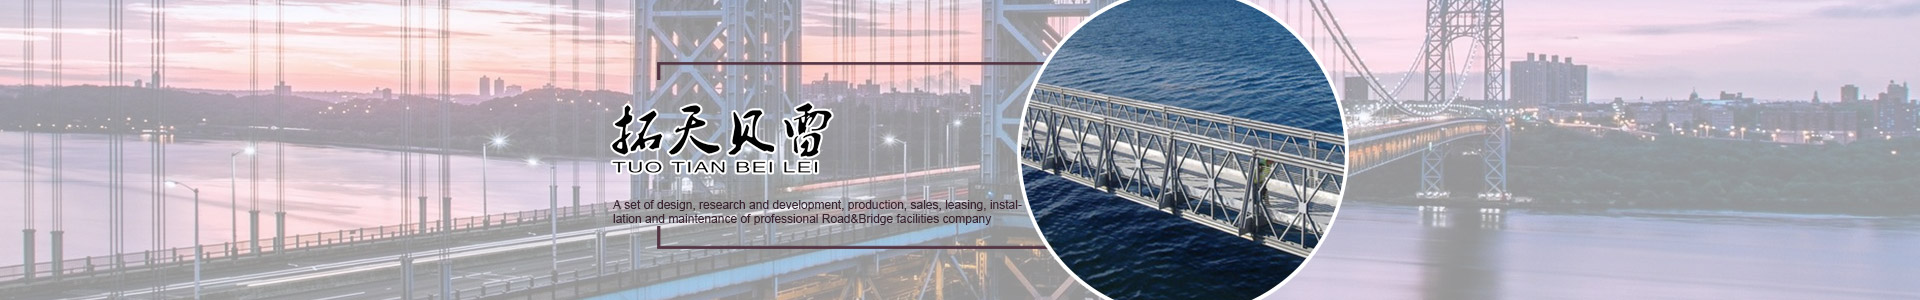 湖南拓天路桥工程机械有限公司_拓天路桥|湖南路桥设施设计|湖南路桥设施销售|桥梁建设